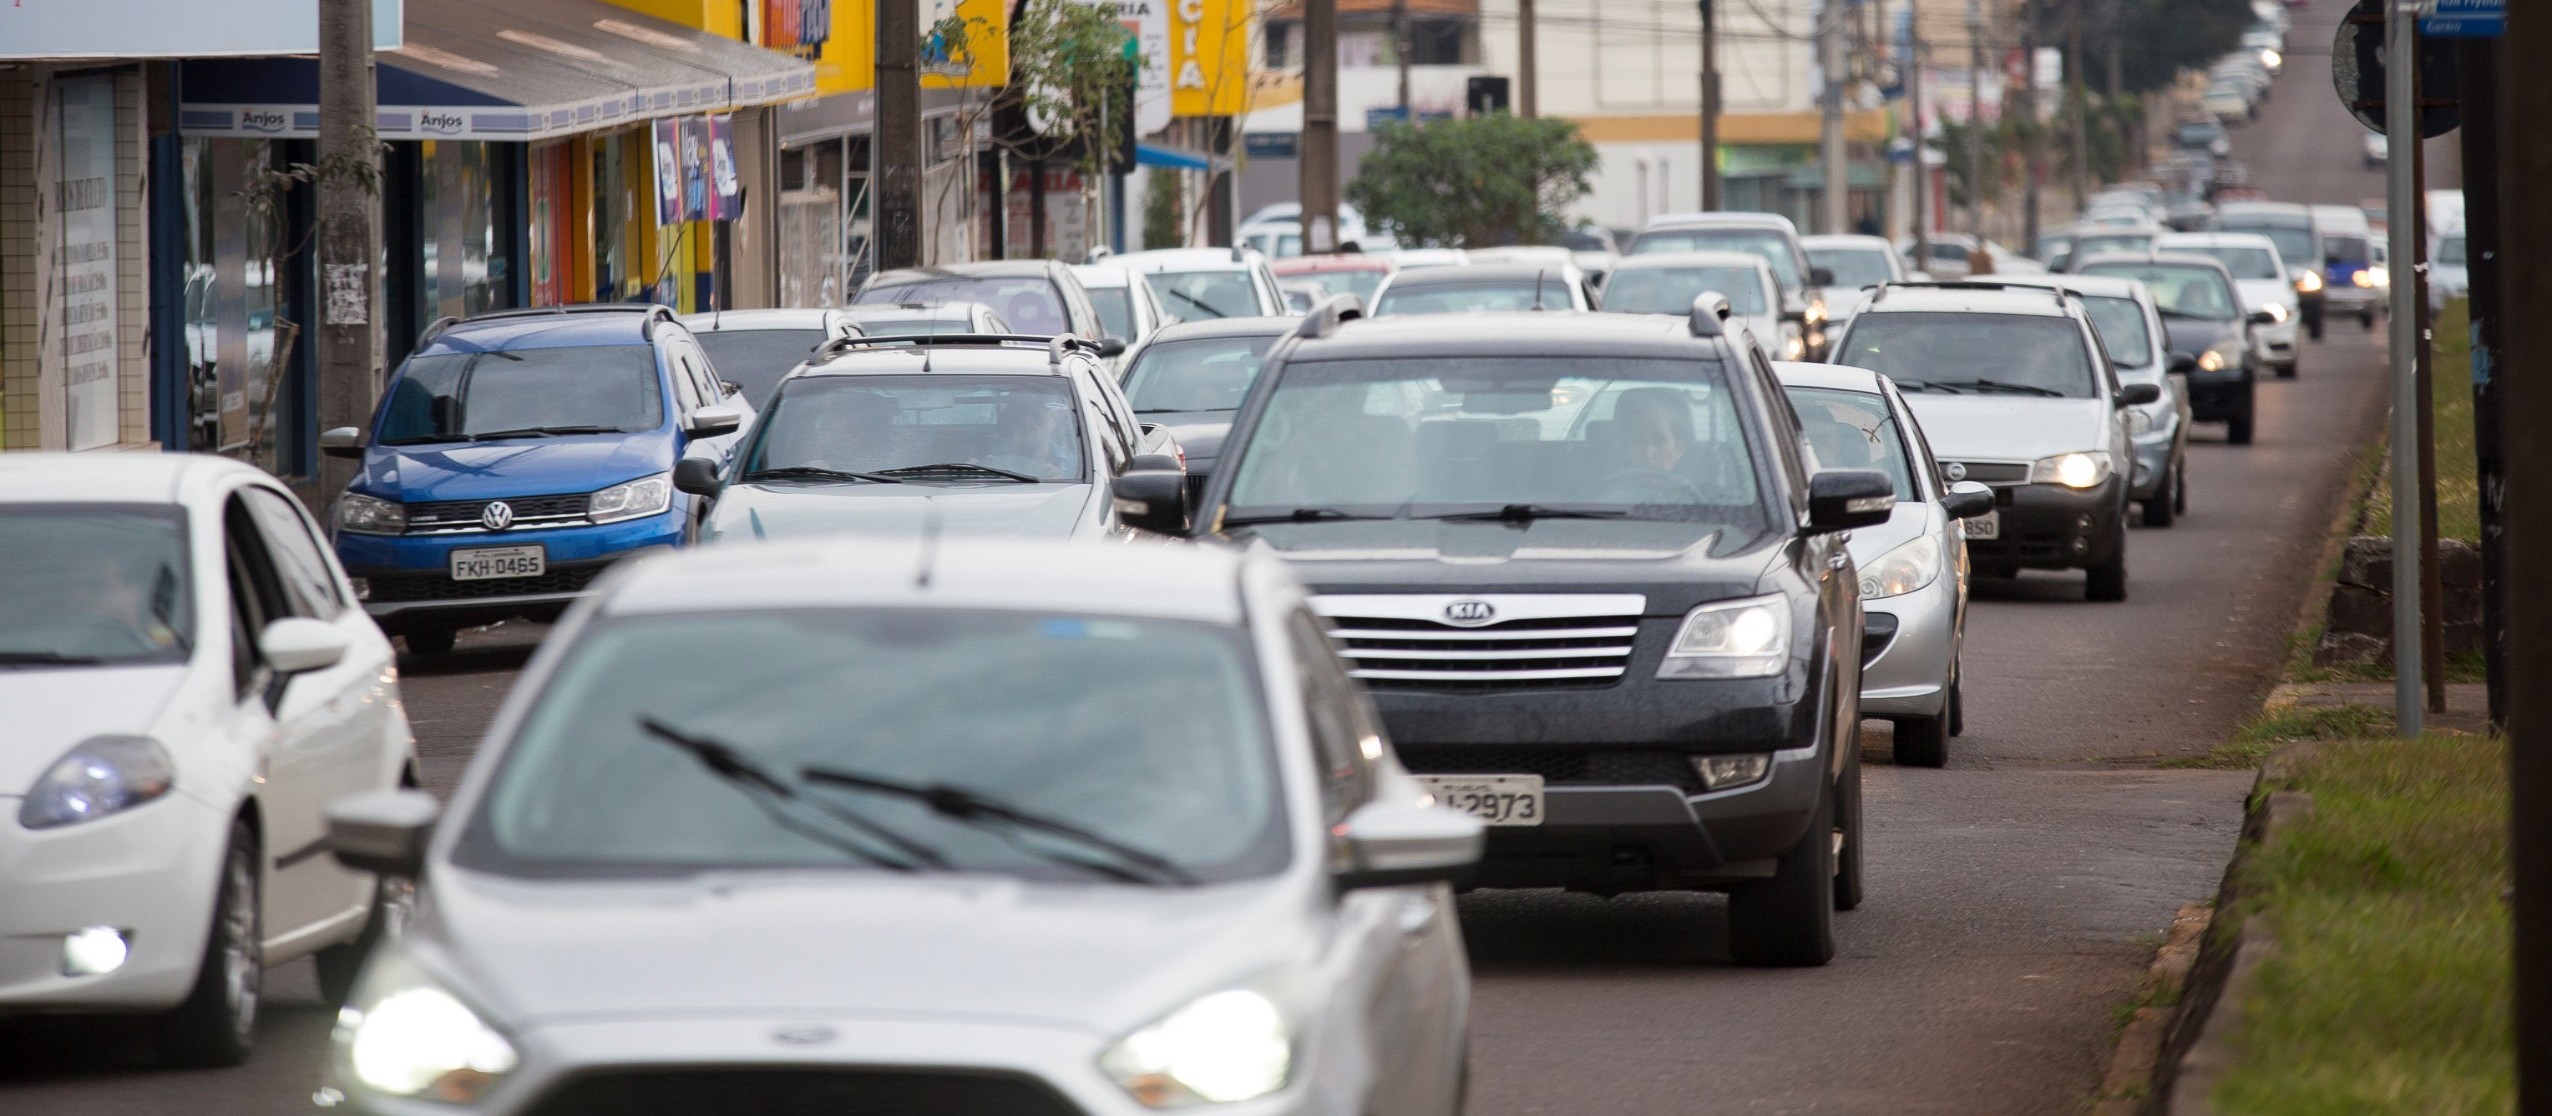 Aumento no número de acidentes de trânsito motiva convocação de audiência pública